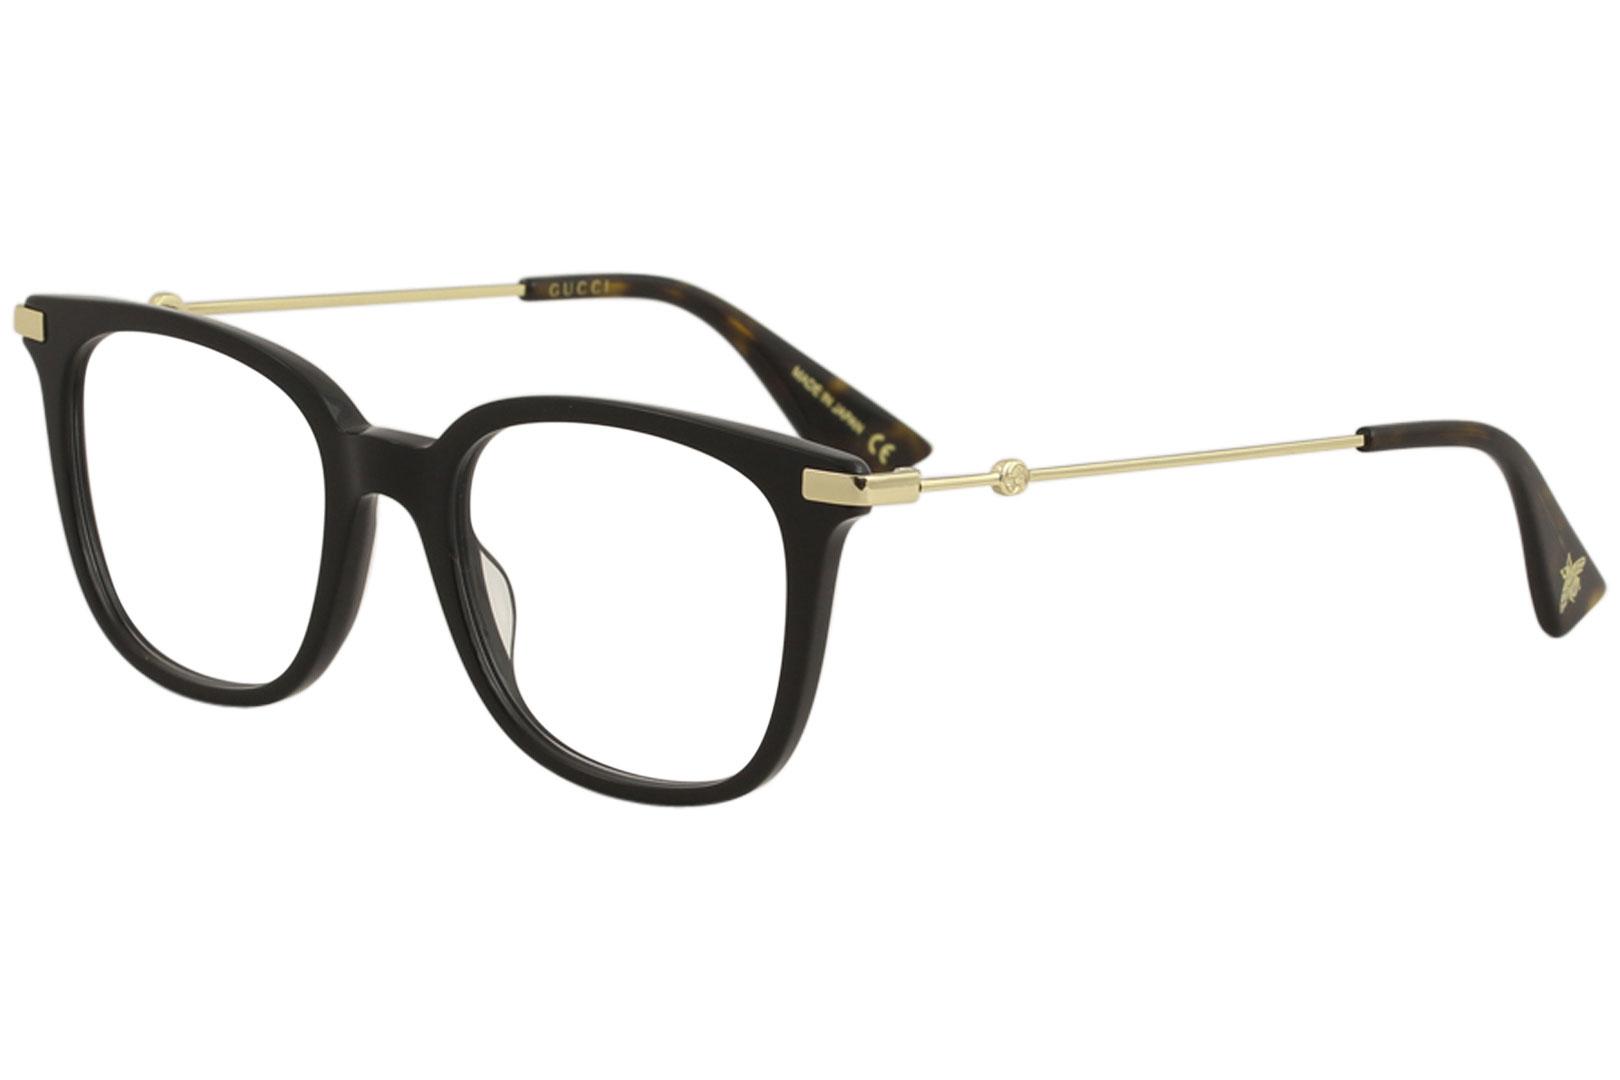 Gucci Women's Eyeglasses GG0110O GG/0110/O Full Rim Optical Frame - Black/Gold   001 - Lens 49 Bridge 19 Temple 145mm